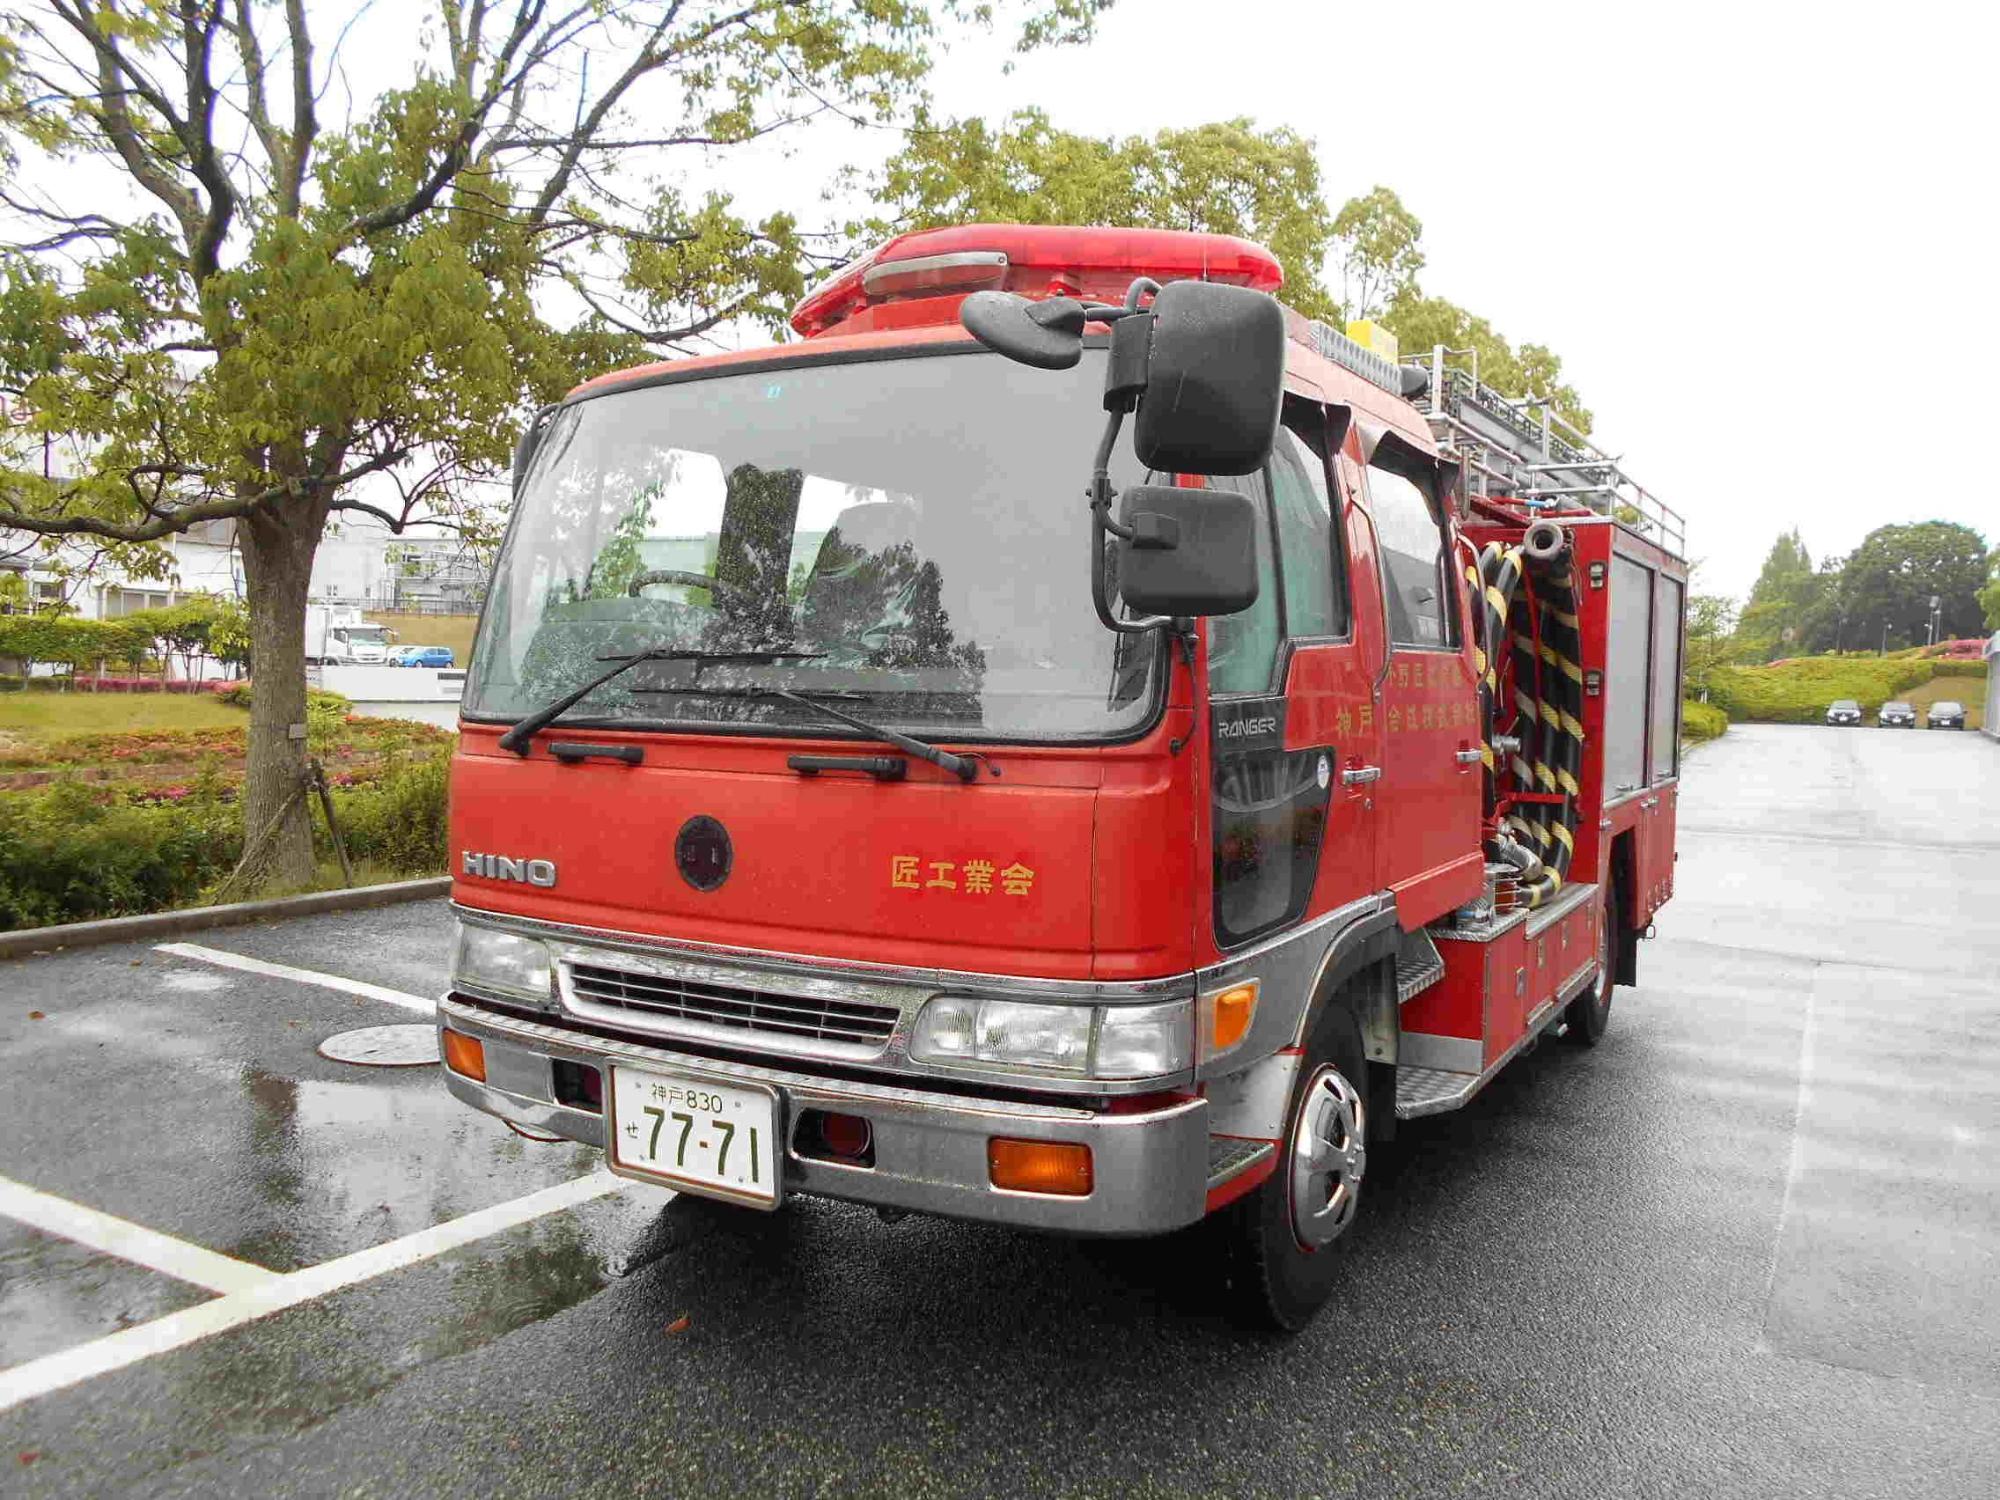 小野匠工業会に譲渡された旧化学消防車の写真